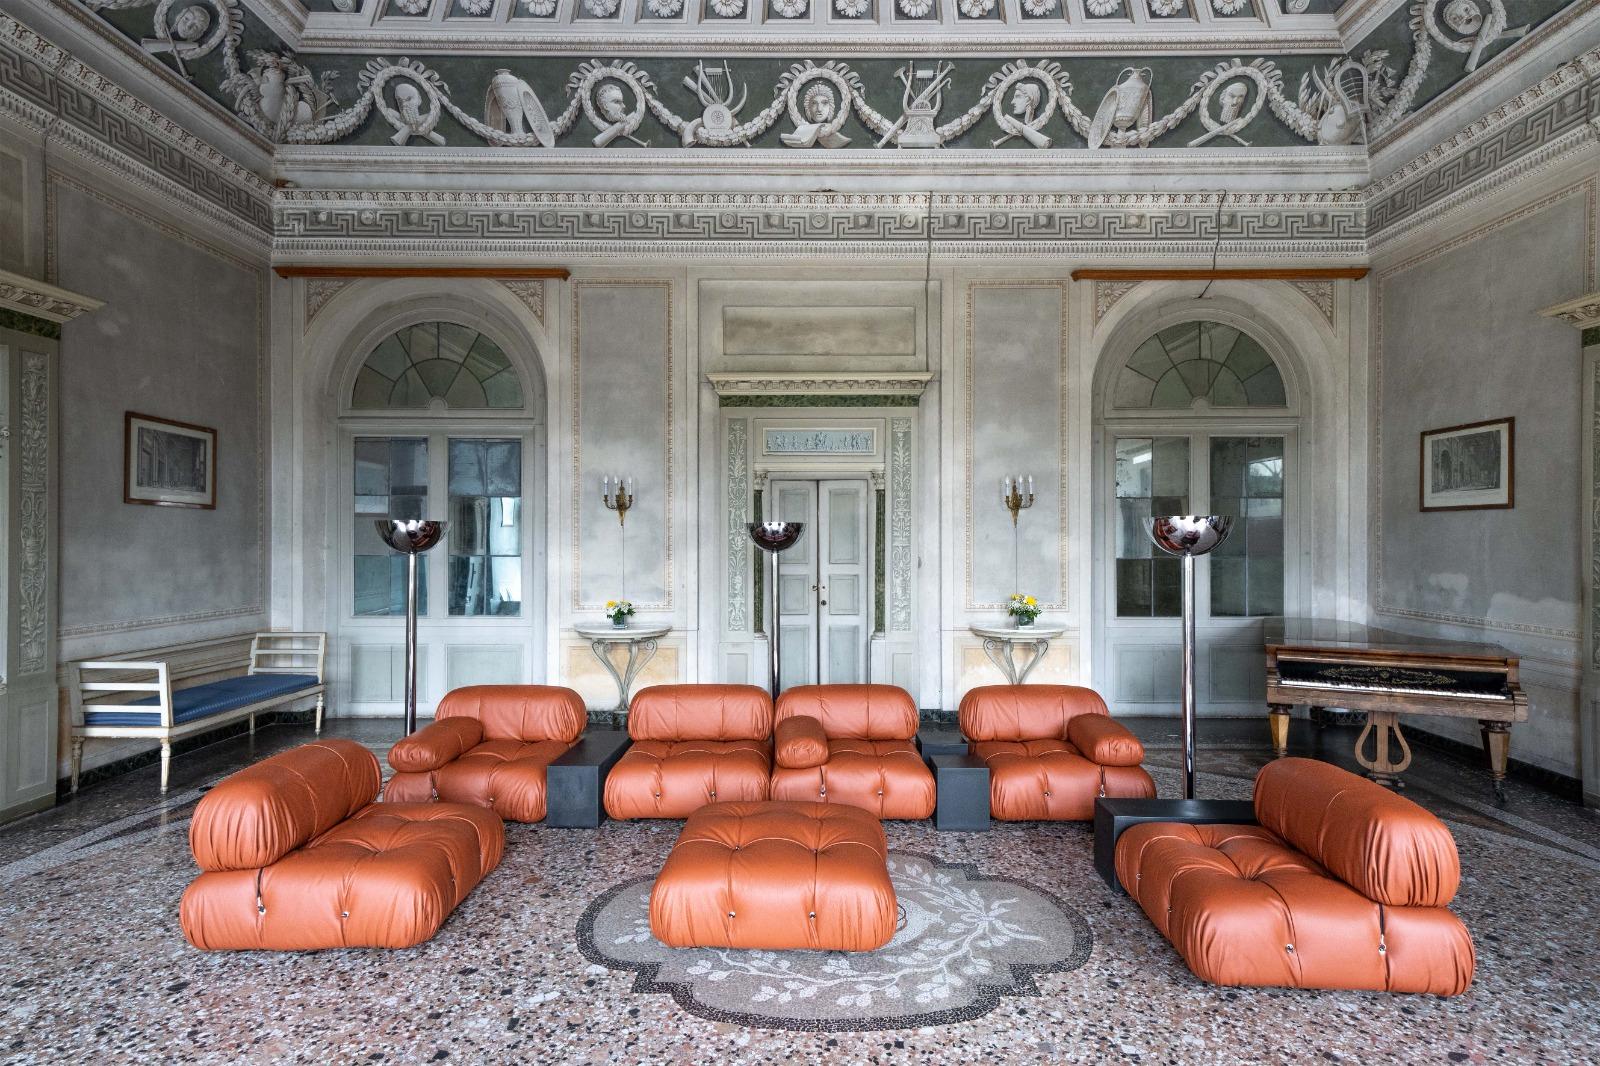 Ein Meisterwerk, dieses modulare Sofa Camaleonda von Mario Bellini in der ersten Auflage, mit cognacfarbenem Lederbezug. Produziert in den frühen 70er Jahren von C&B Italia, Italien. 7 große Sitzelemente, mit Rücken- und Armlehnen. Kombiniert mit 3